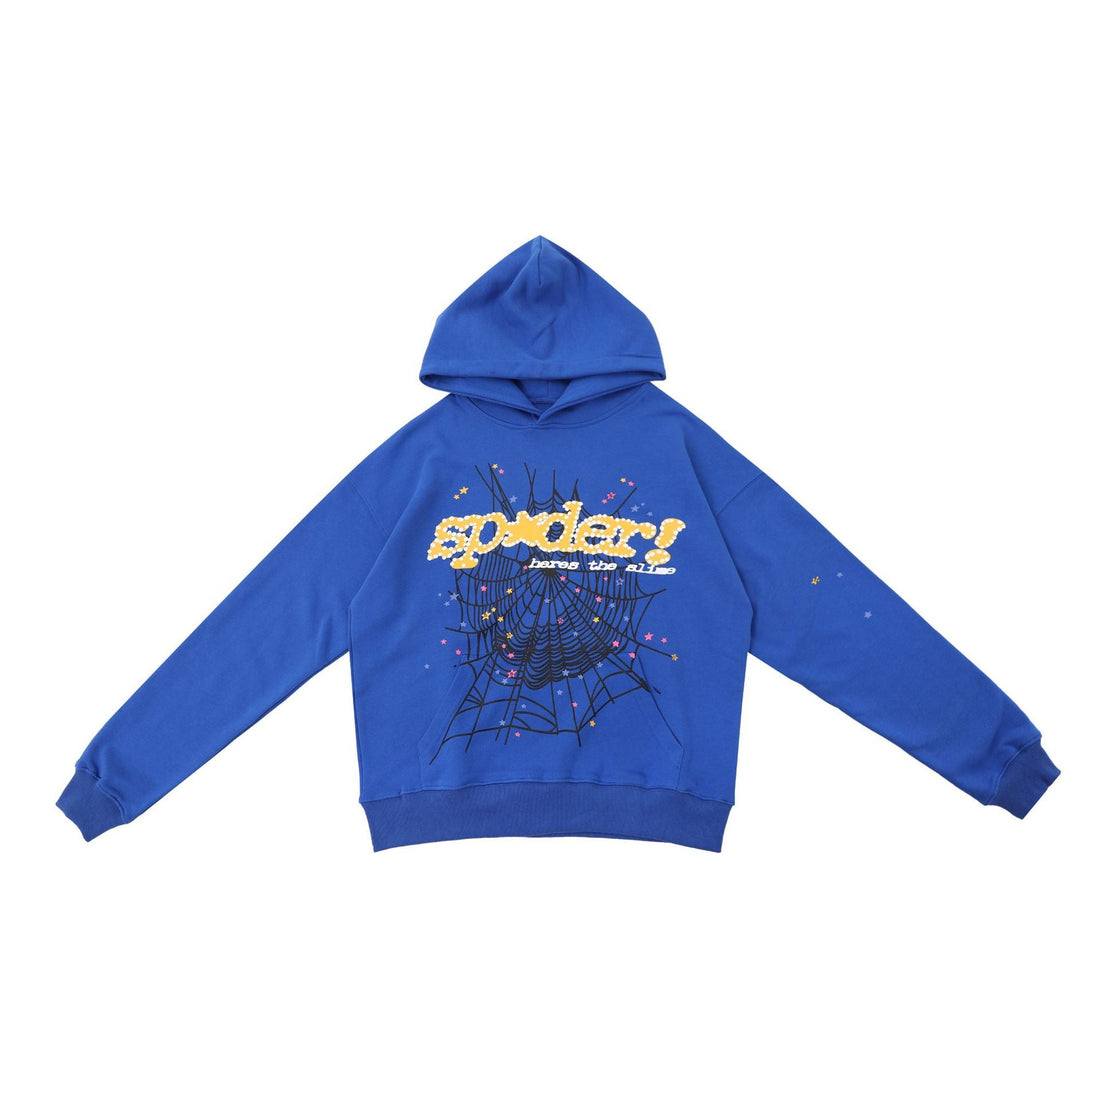 Vivid Blue Sp5der Hoodie - Trendy Web Print Hooded Sweatshirt - Seakoff